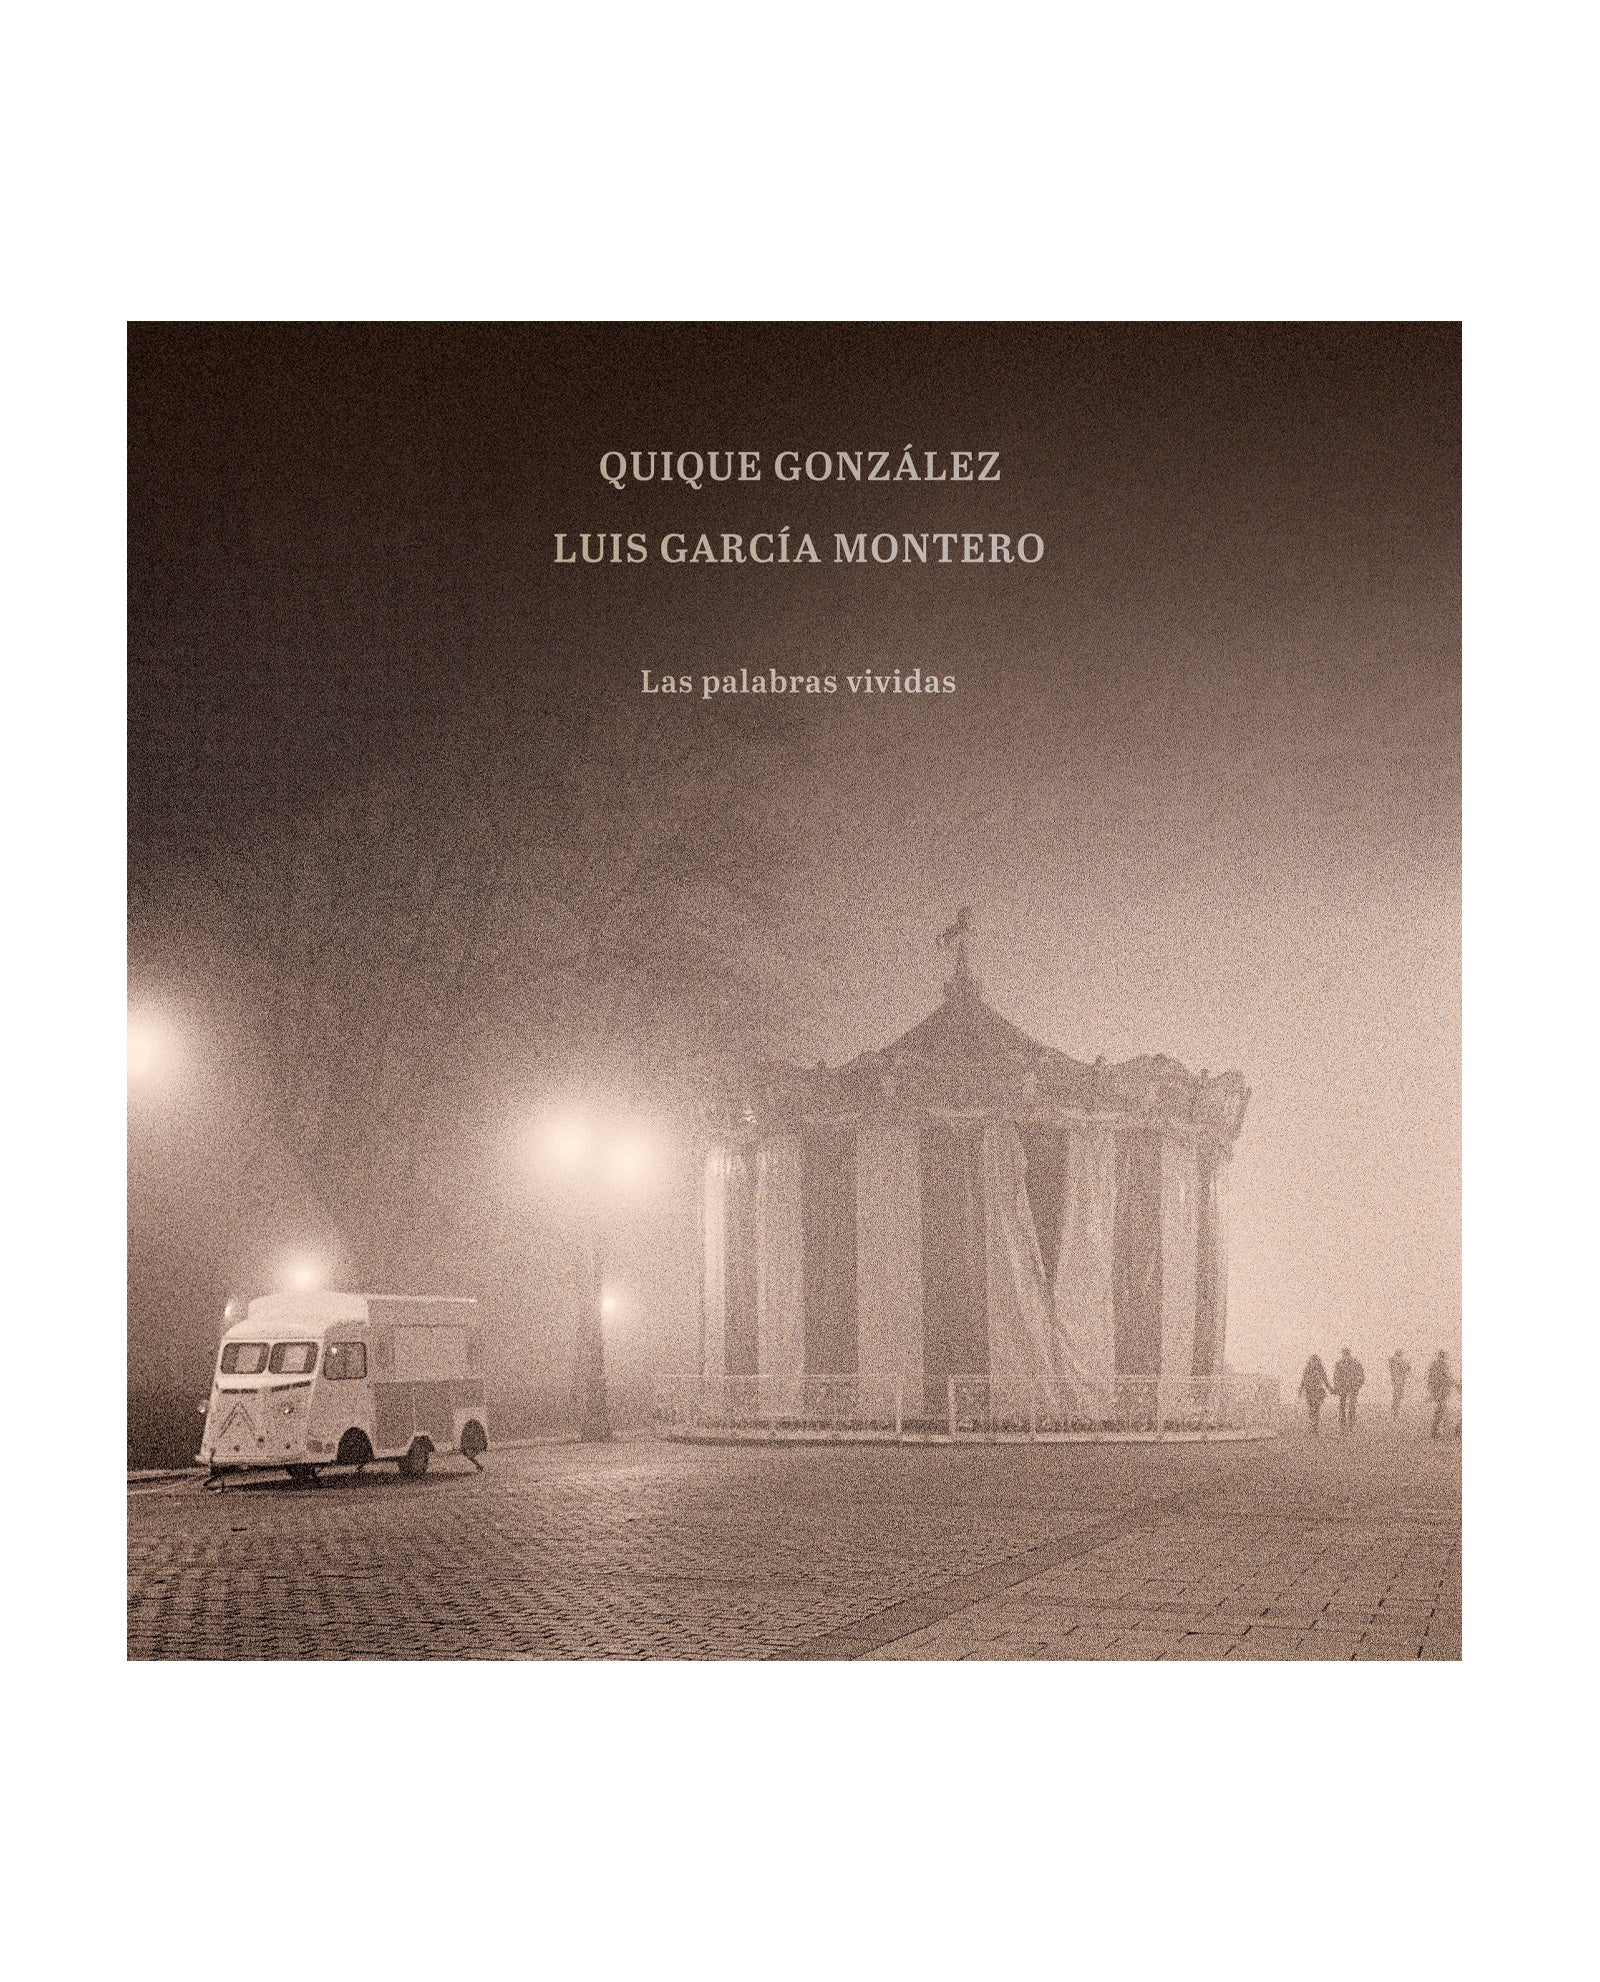 Quique Gonzalez - LP Vinilo Firmado "Las palabras vividas" - D2fy · Rocktud - Quique González